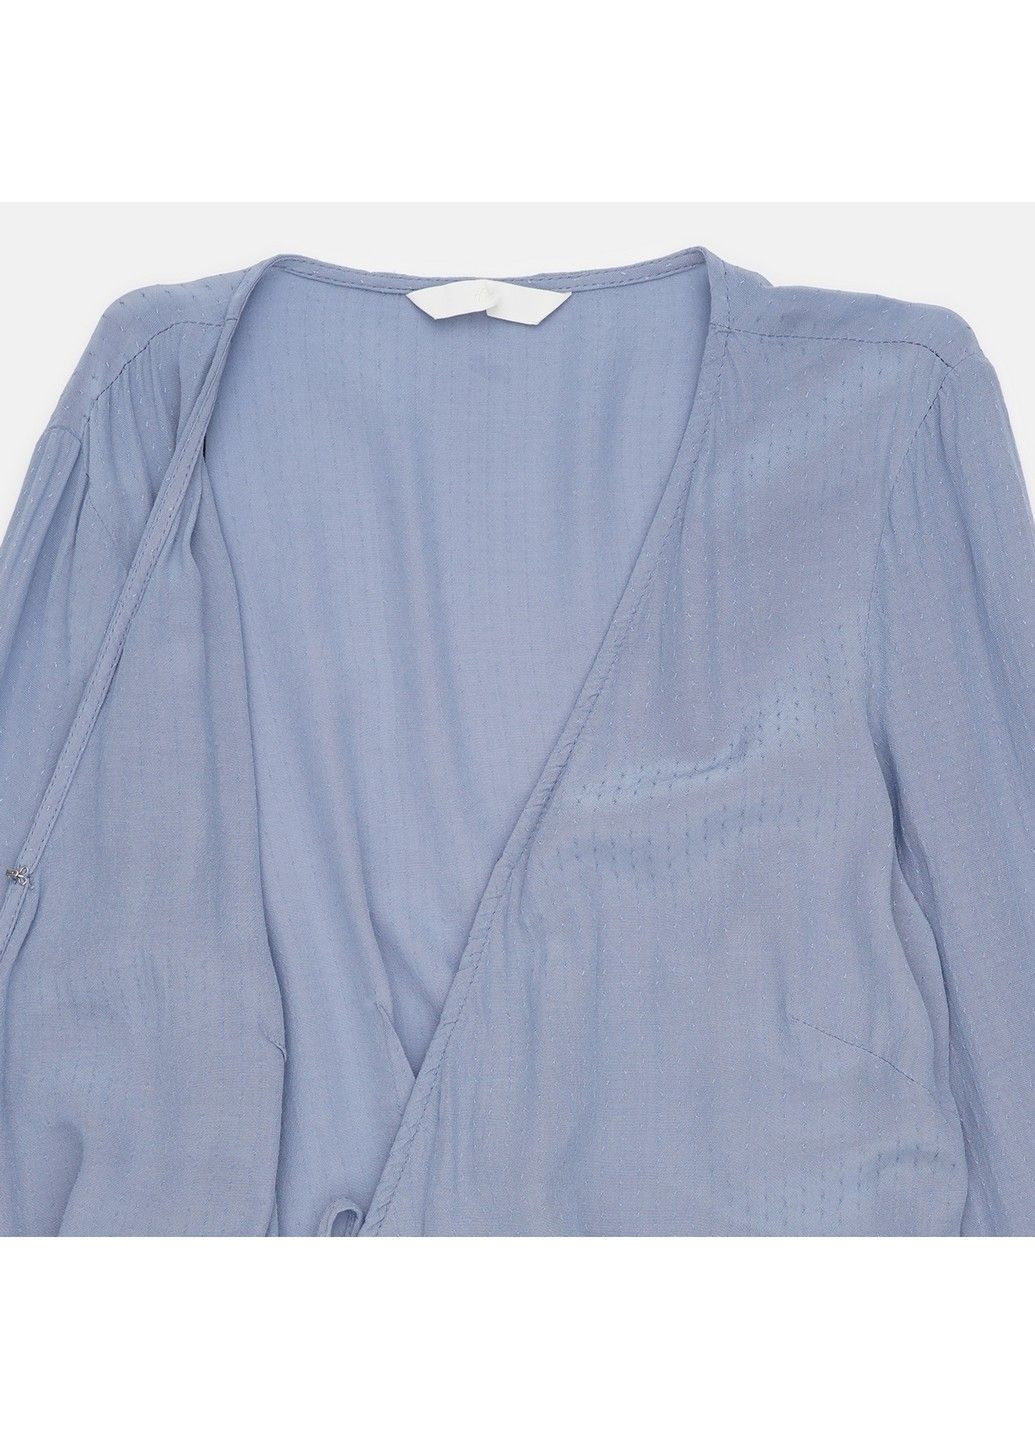 Синяя однотонная блузка H&M демисезонная